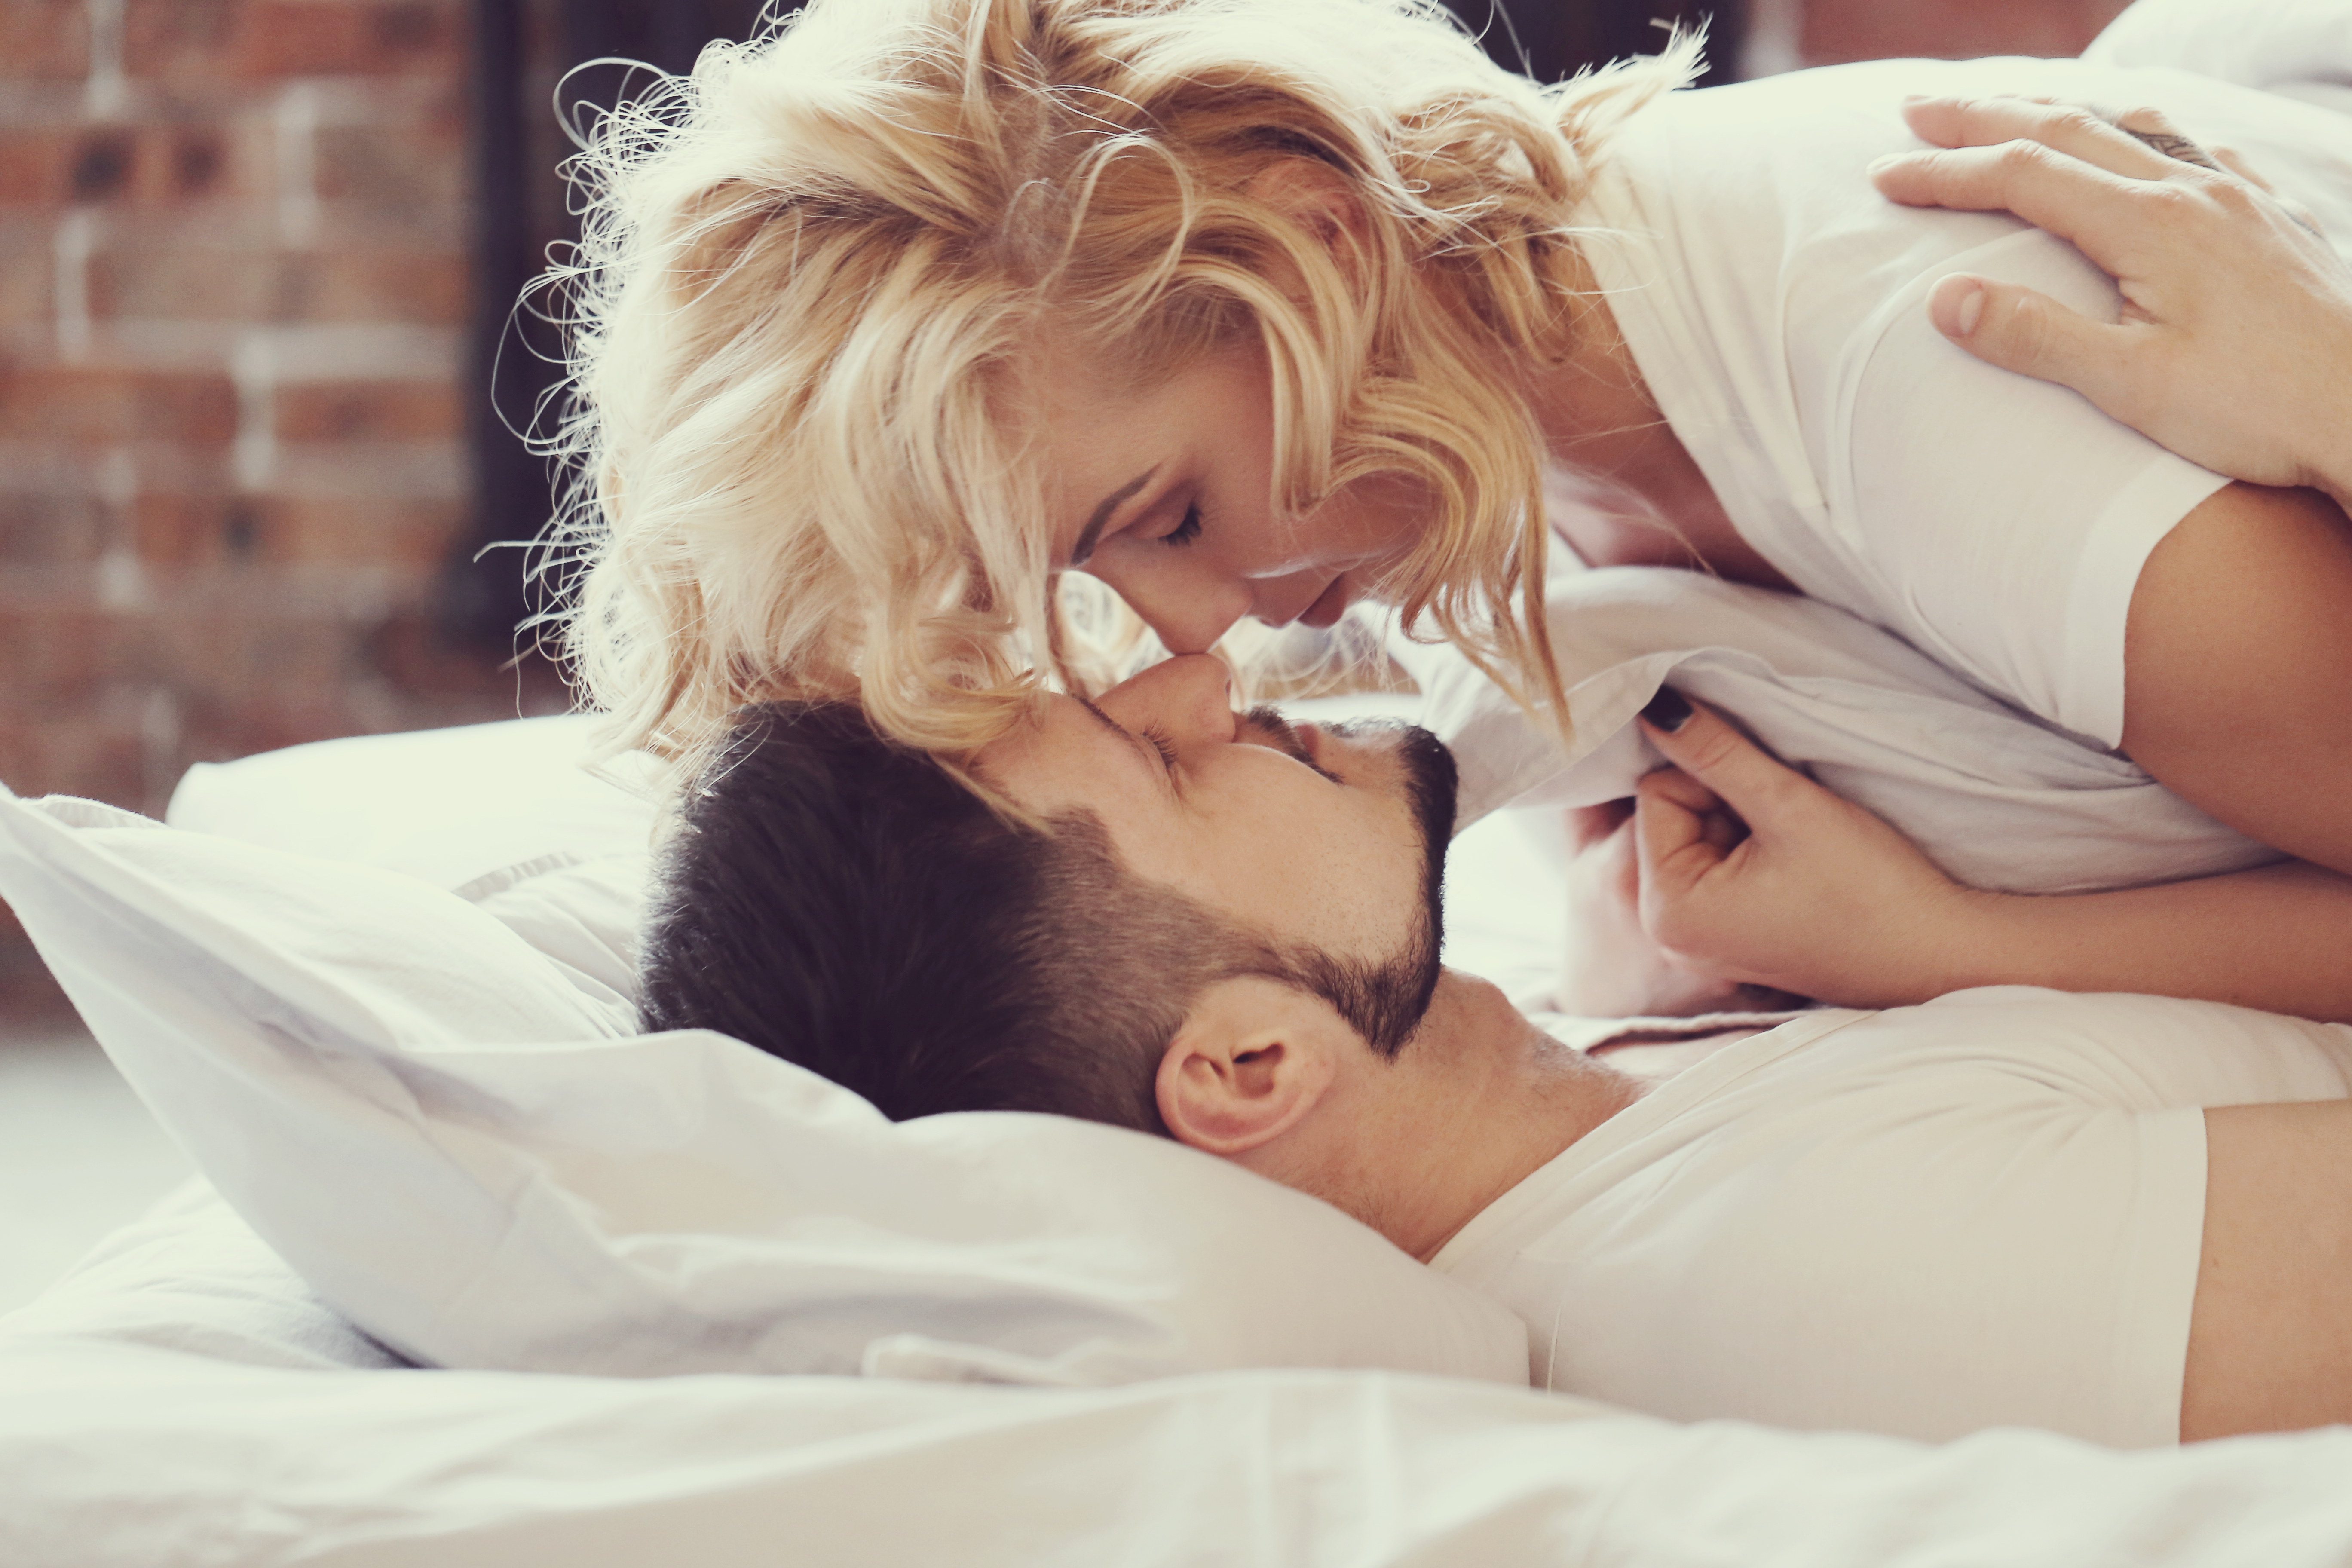 Blondes kisses. Утренний поцелуй. Утром в постели с любимой. Счастливые пары в постели. Утро влюбленных.